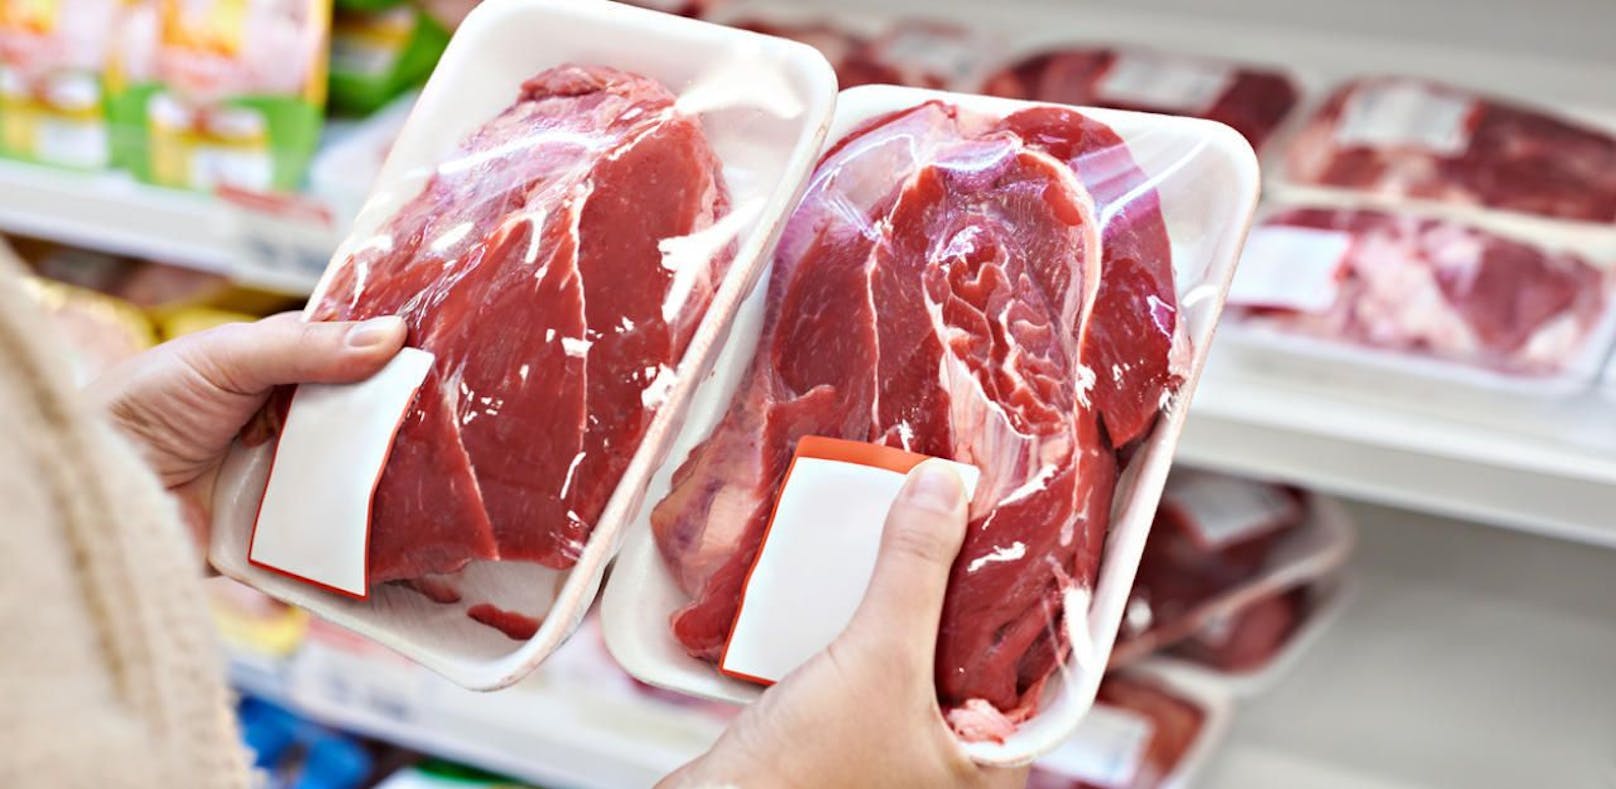 Rindfleisch in einem Supermarkt. Symbolfoto